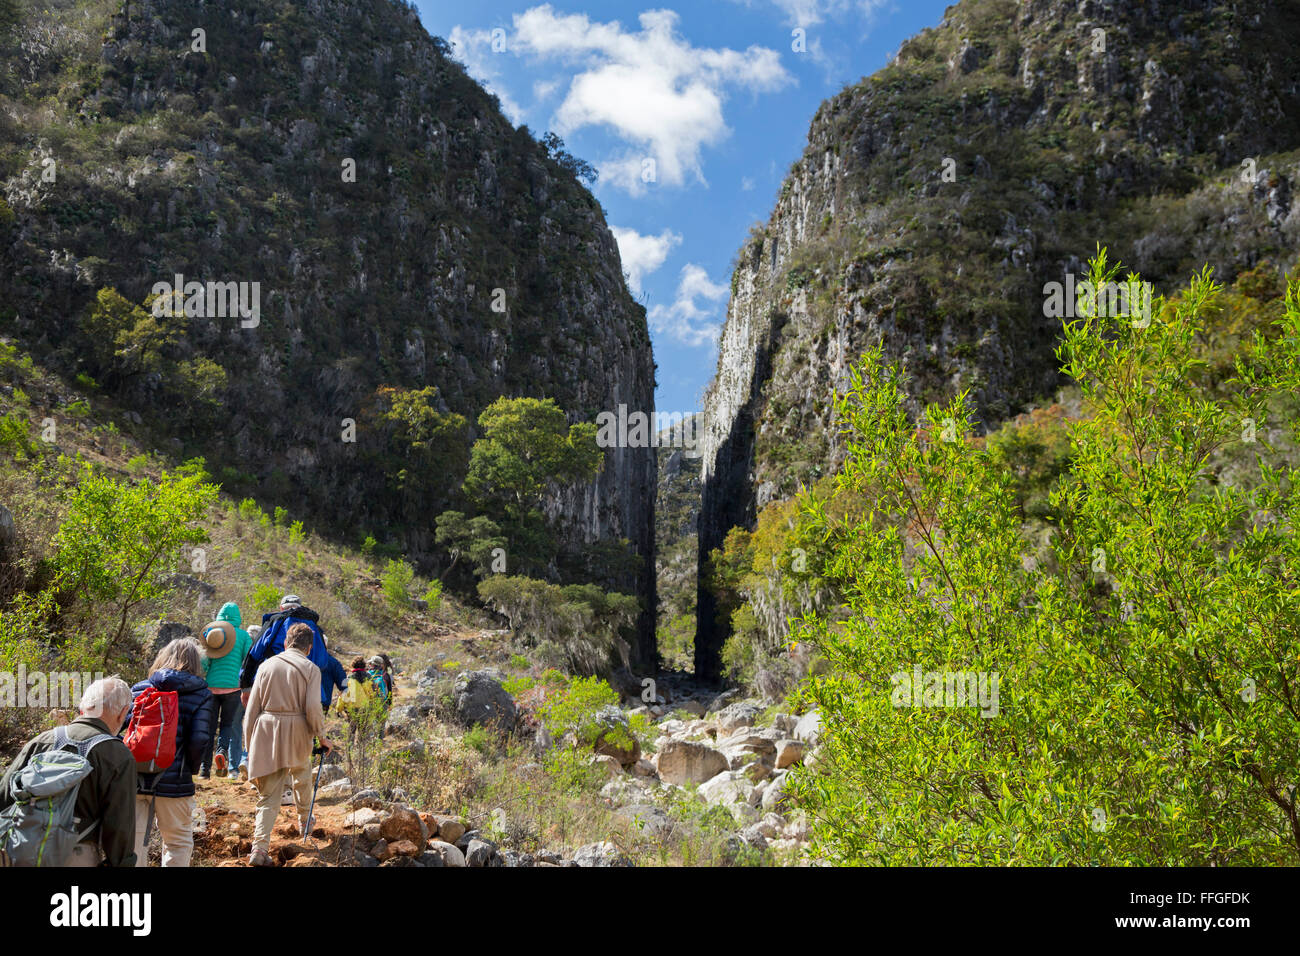 Santiago Apoala, Oaxaca, Mexique - Touristes randonnée pédestre près du village de Apoala, une petite ville de montagne. Banque D'Images